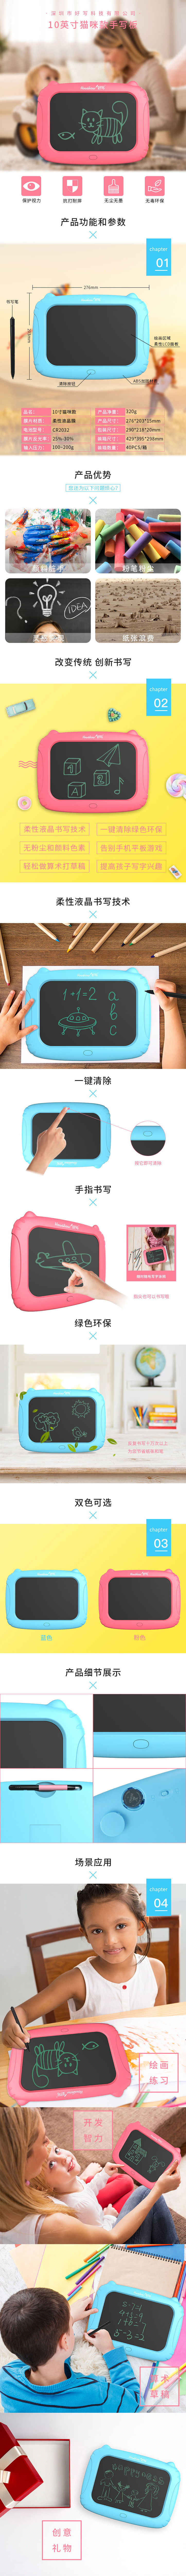 猫咪款液晶儿童画板:好写（howshow）新推出卡通可爱款儿童绘画板、儿童画板、儿童手写板